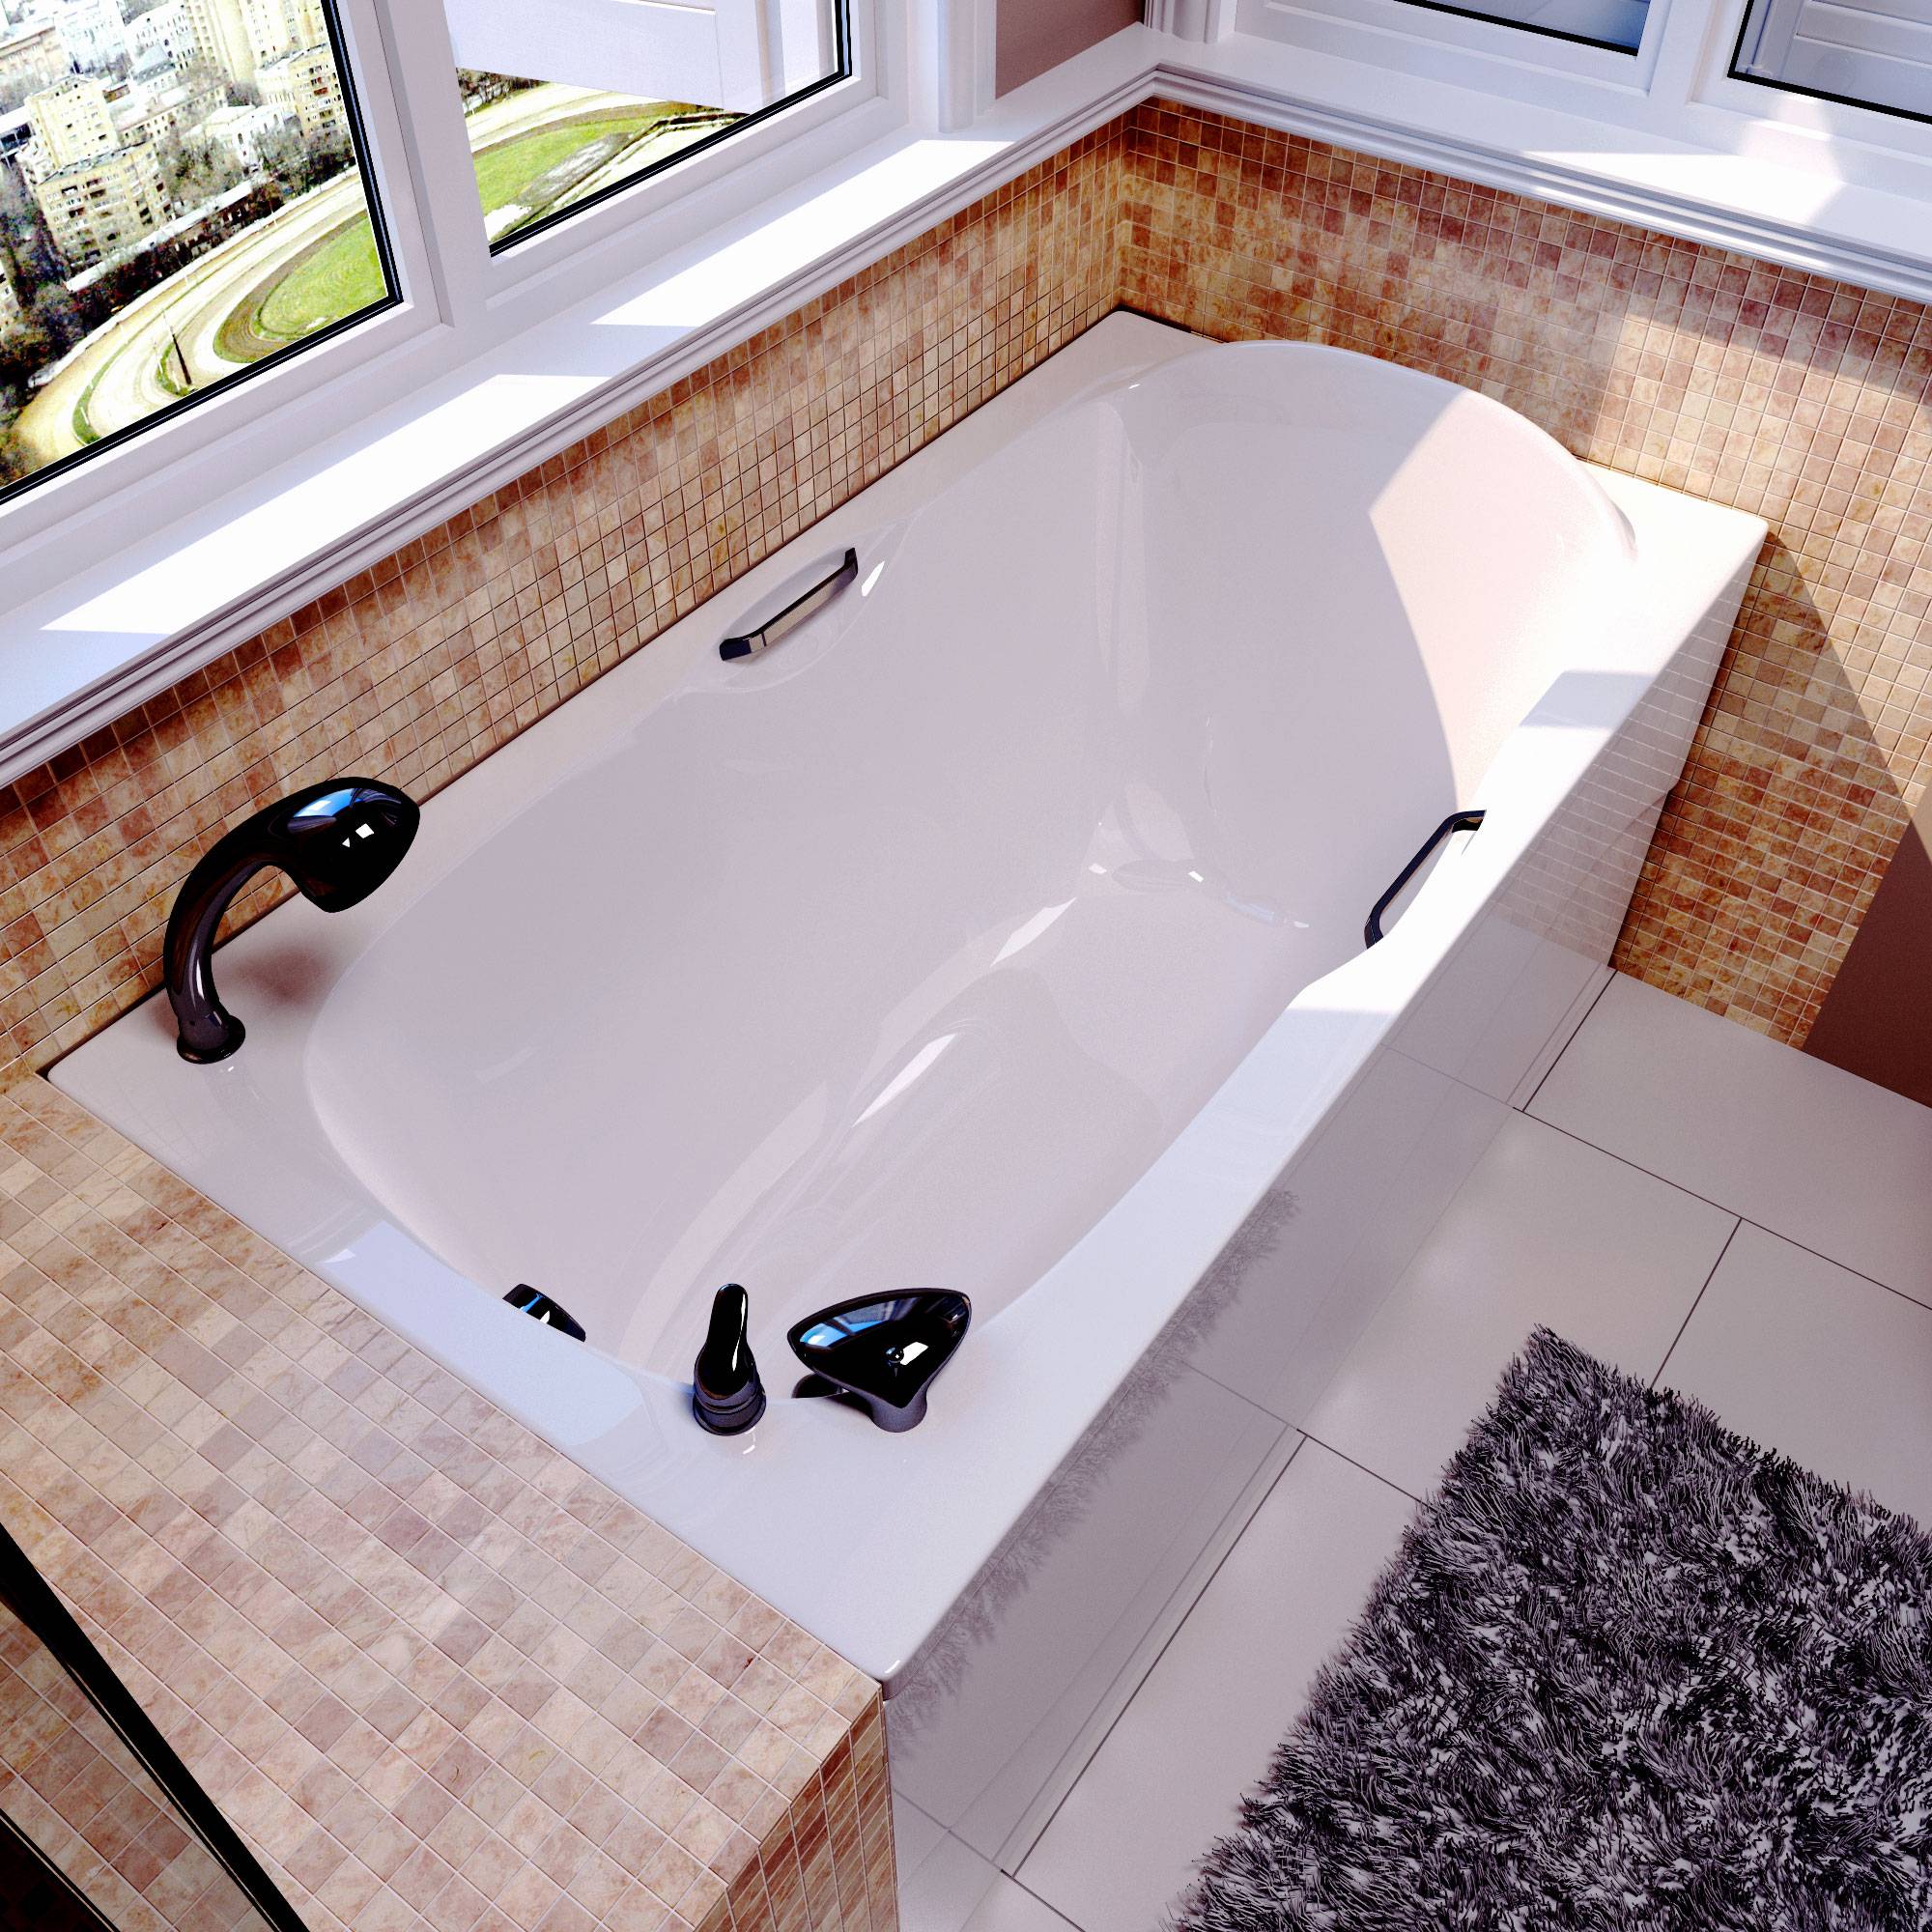 Как выбрать чугунную ванну для своего дома?